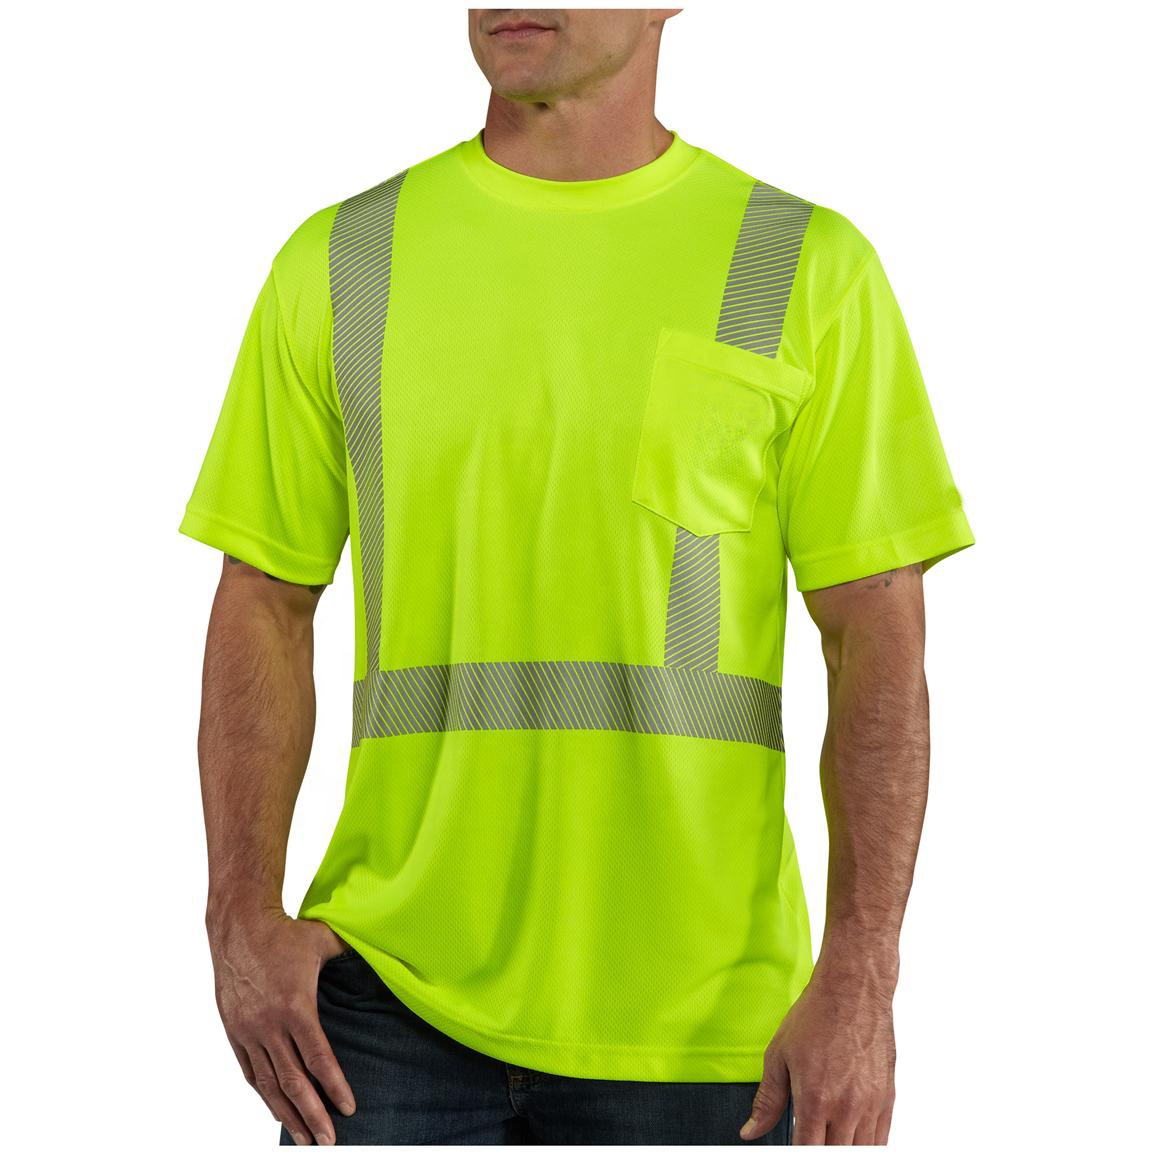 Venta a granel Ropa reflectante de seguridad Ropa de trabajador de verano de secado rápido Camisetas deportivas de talla grande para hombre con rayas reflectantes de alta visibilidad